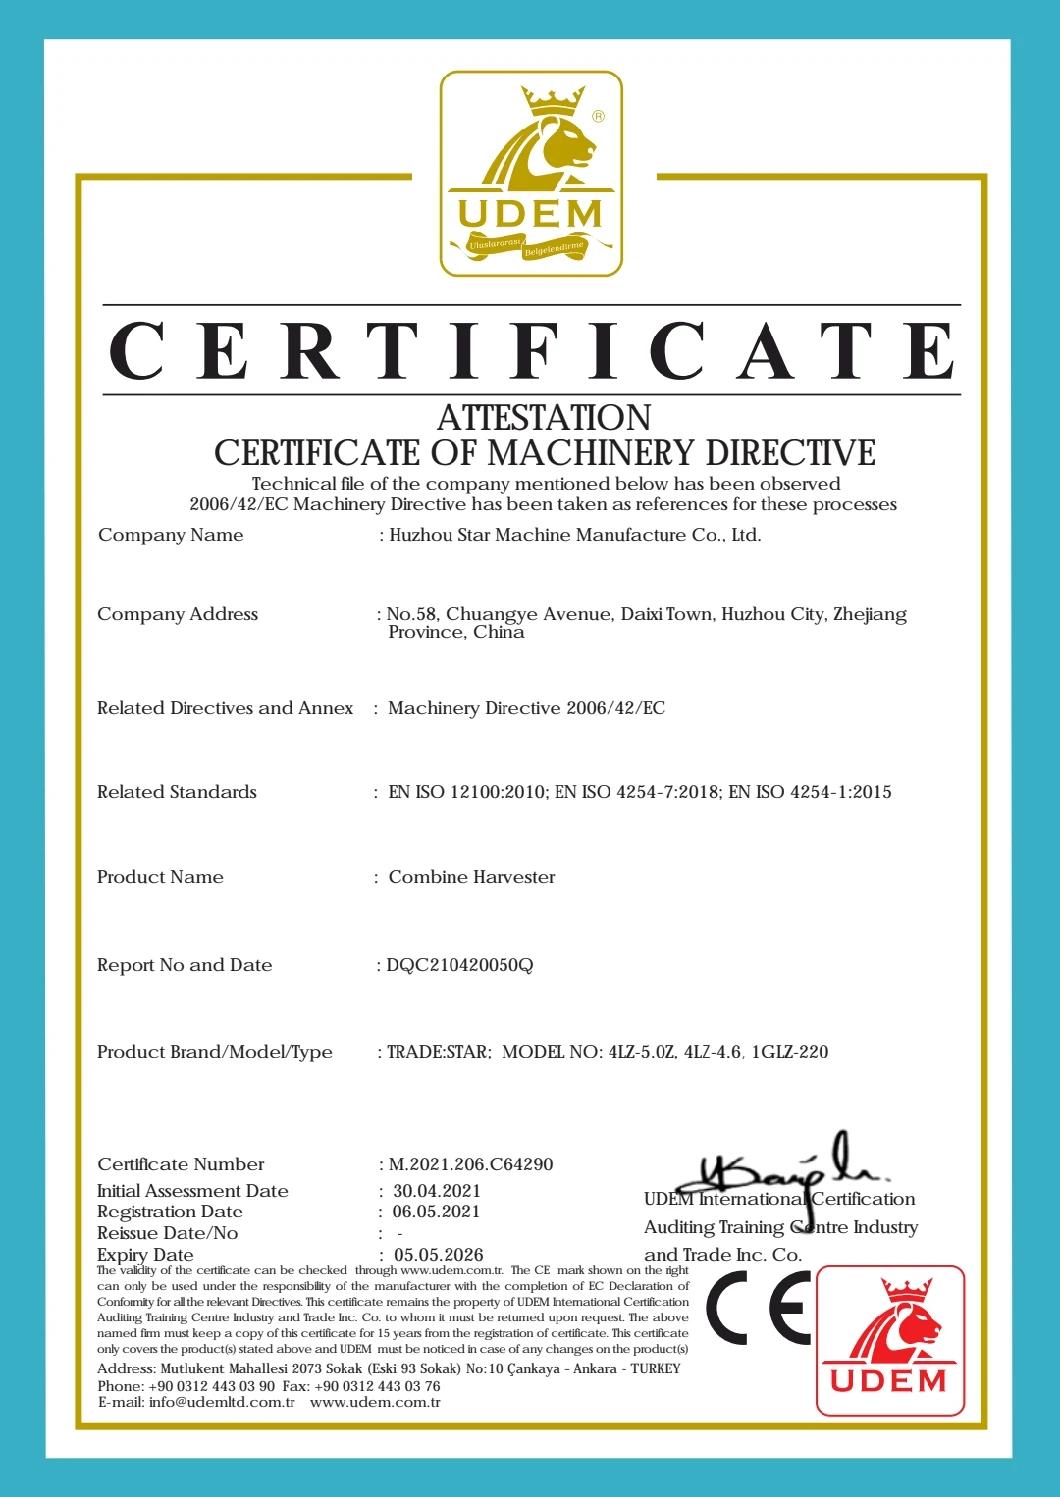 CE Certified 88HP 4lz-5.0z Star Mini Rice Combine Harvester Wheat Harvester